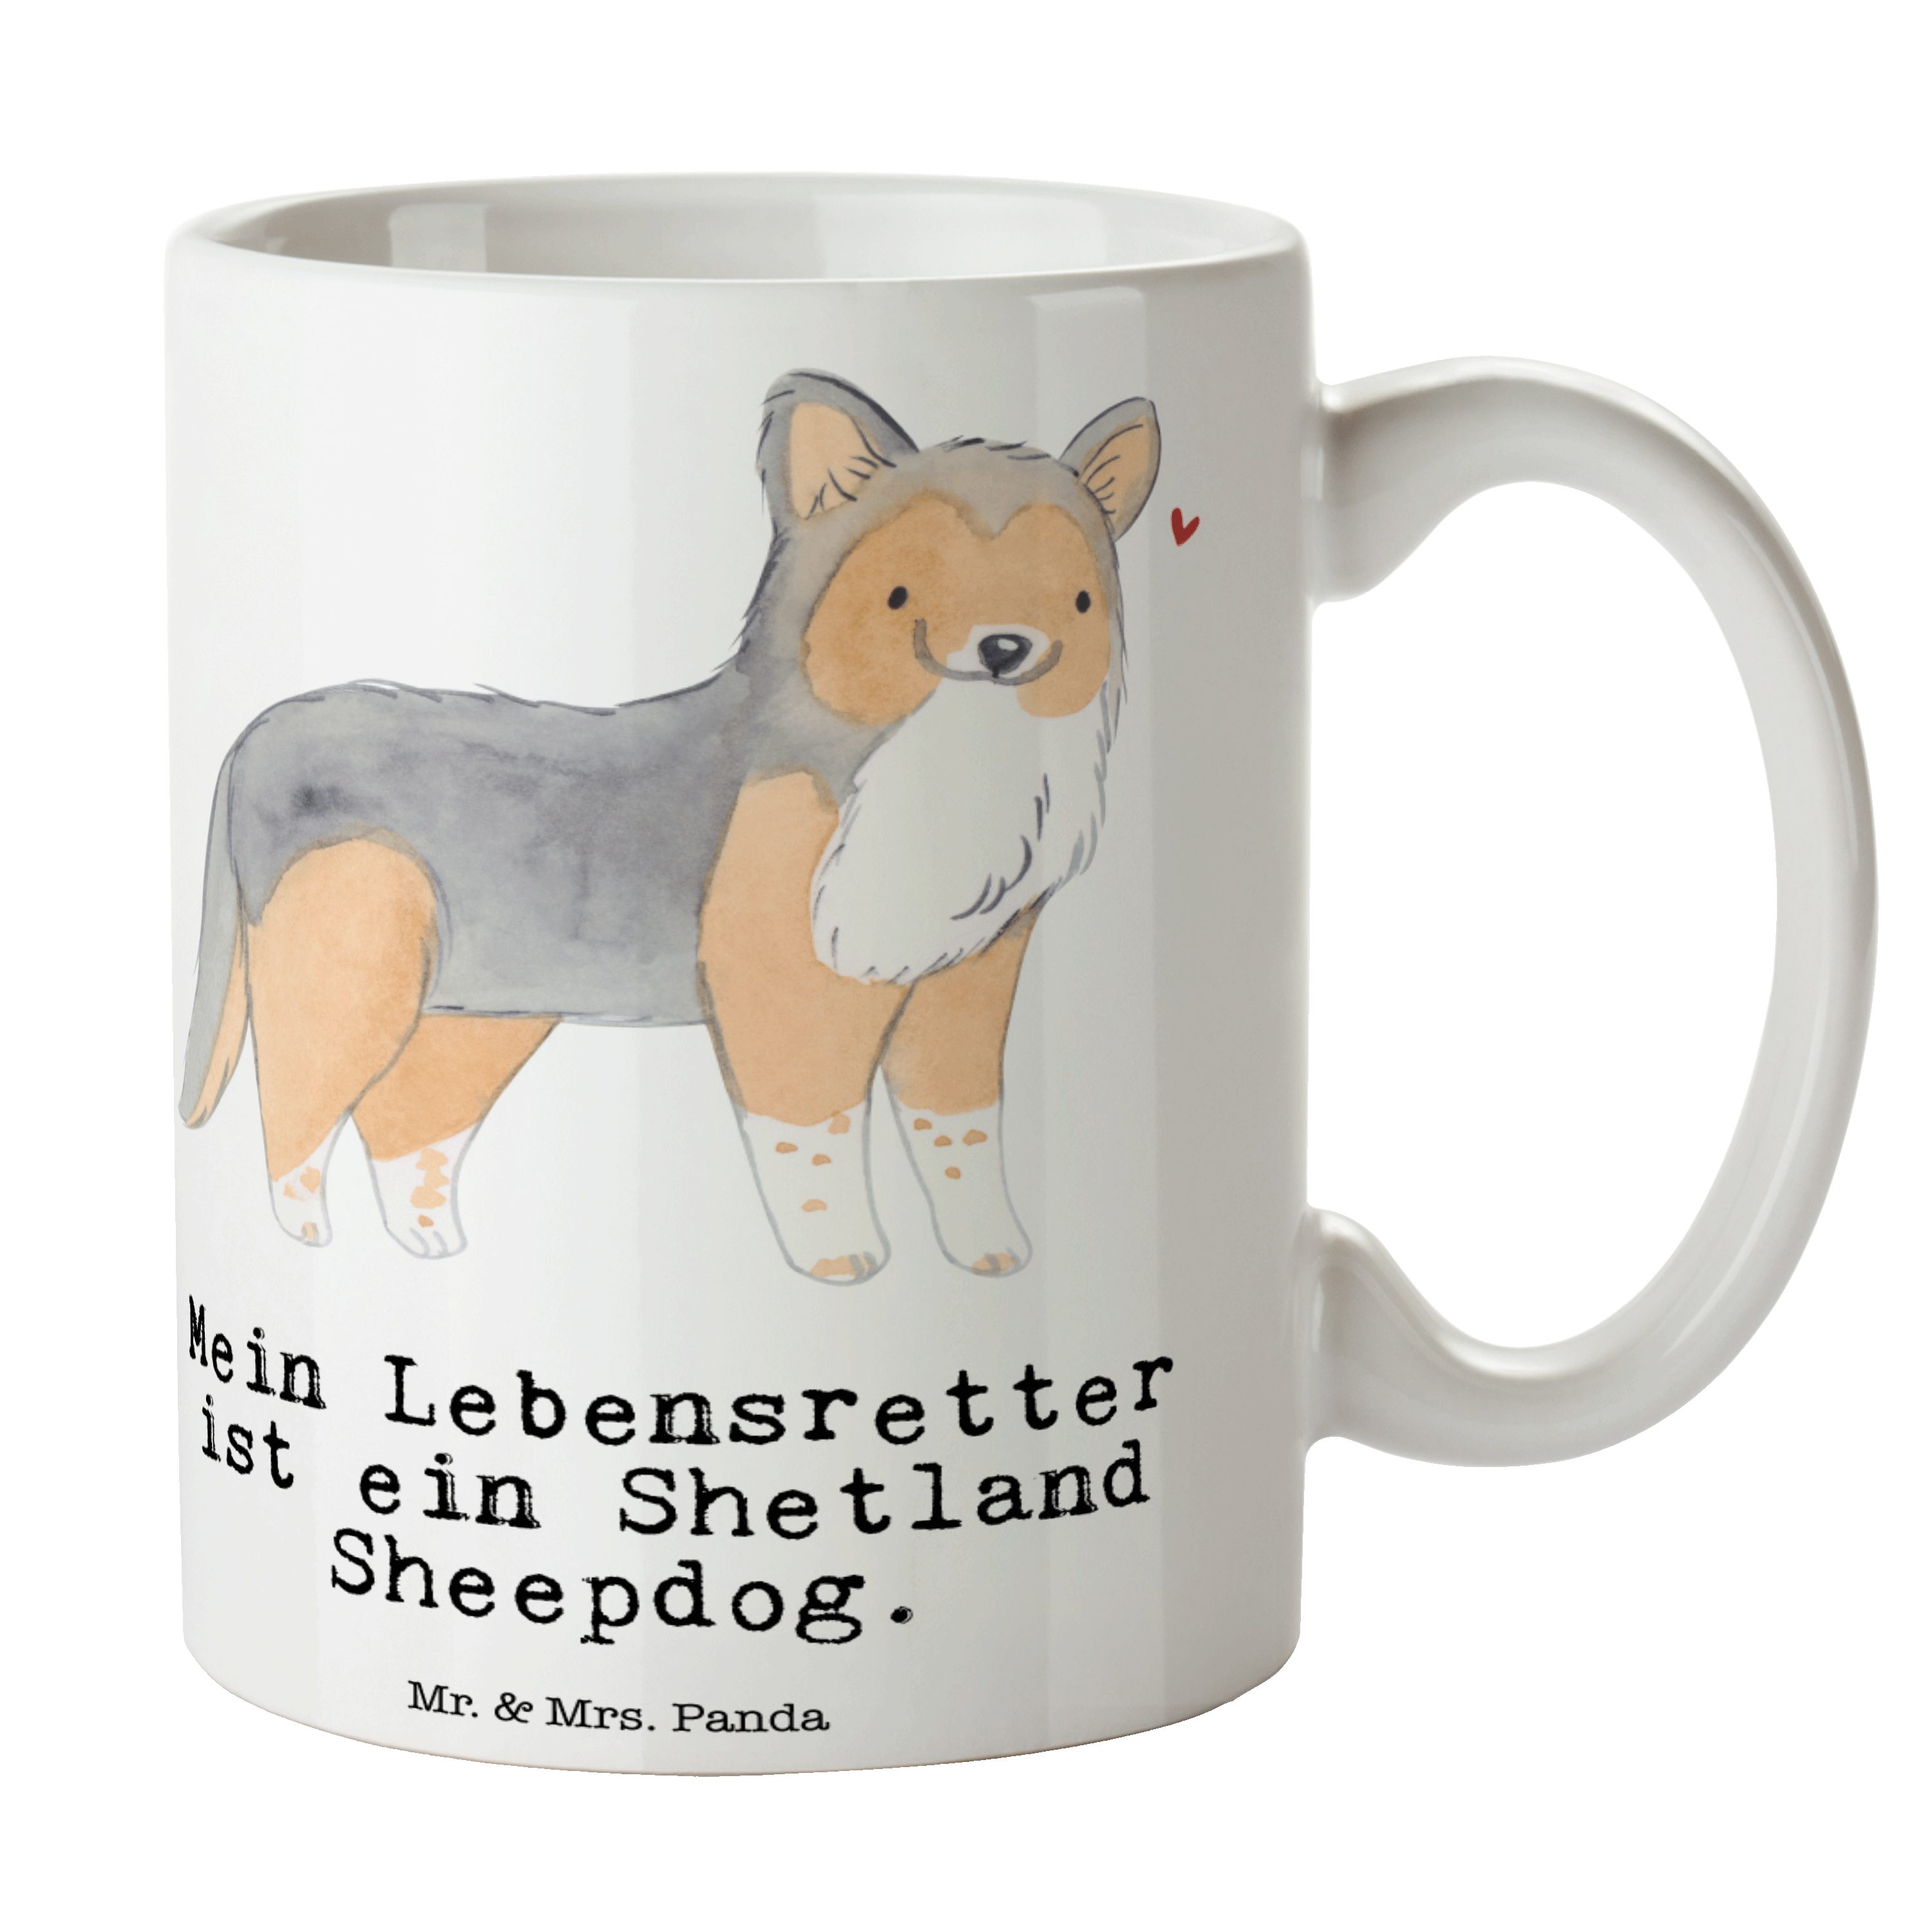 Mr. & Mrs. Panda Tasse Shetland Sheepdog Lebensretter - Weiß - Geschenk, Hund, Geschenk Tass, Keramik